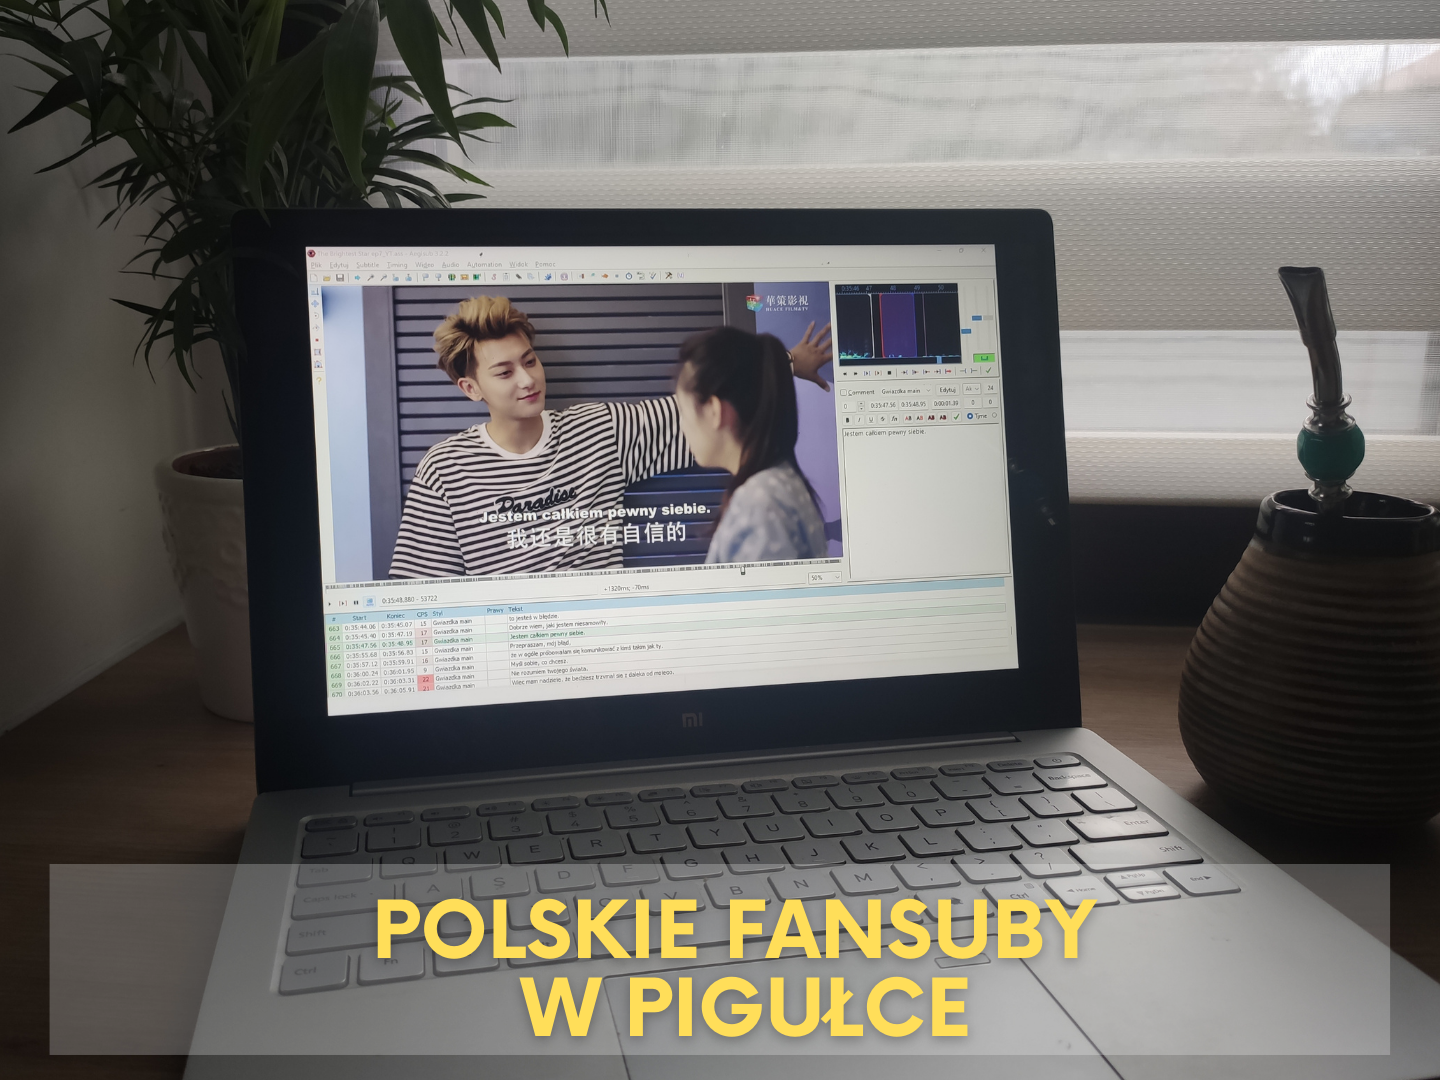 Świat polskich fansubów dramowych w pigułce